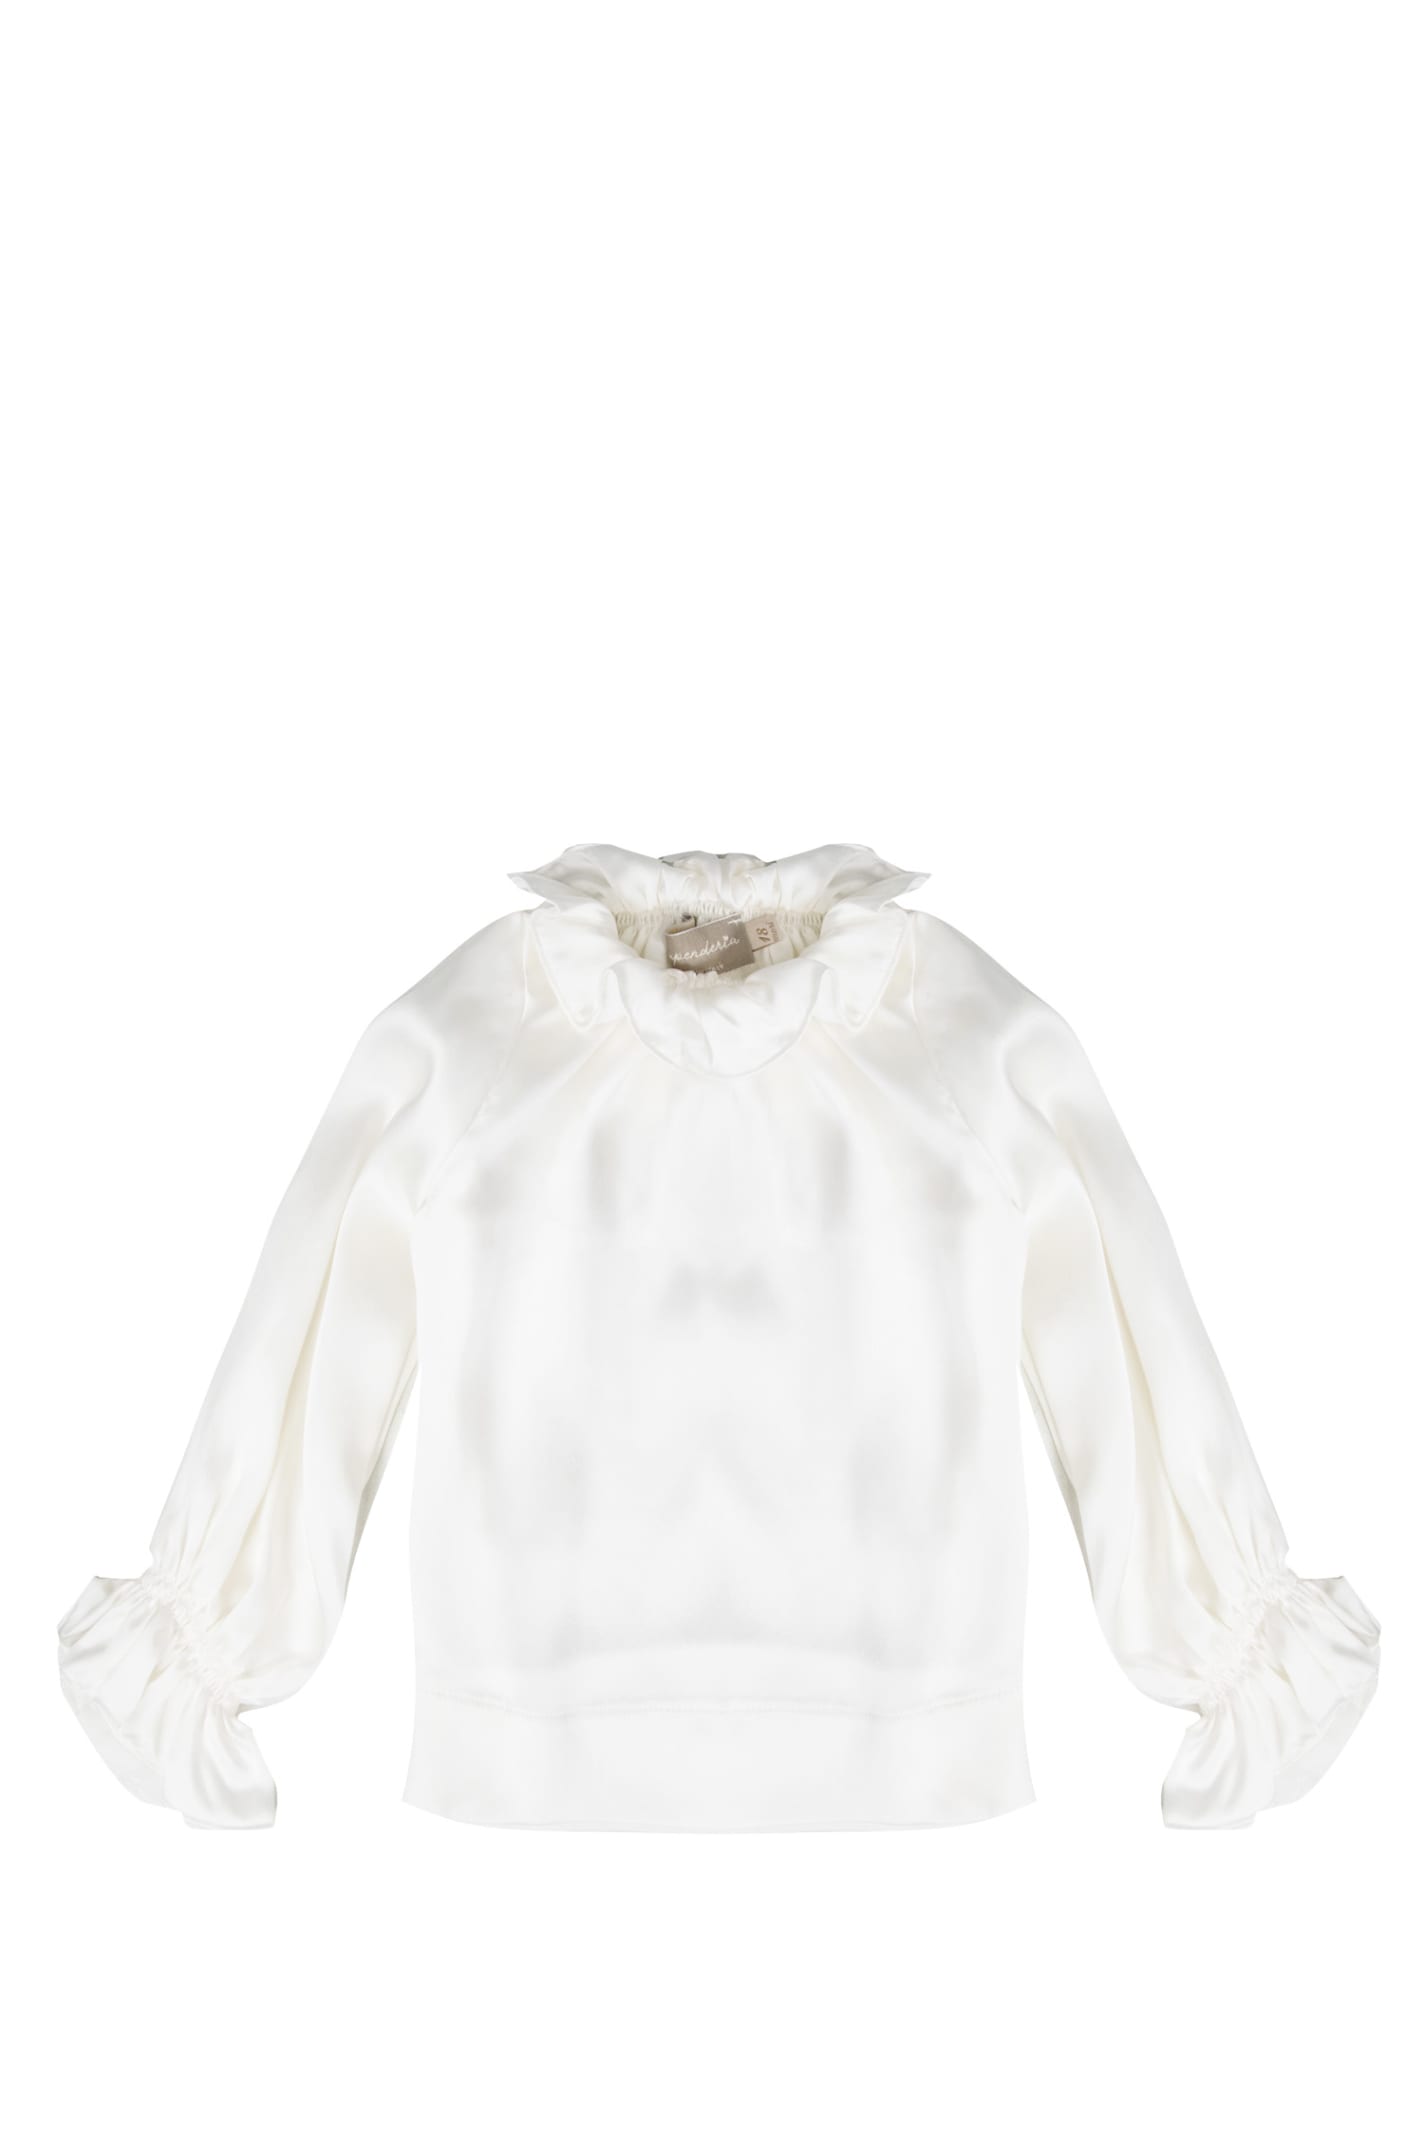 La Stupenderia Kids' Silk Blouse In White